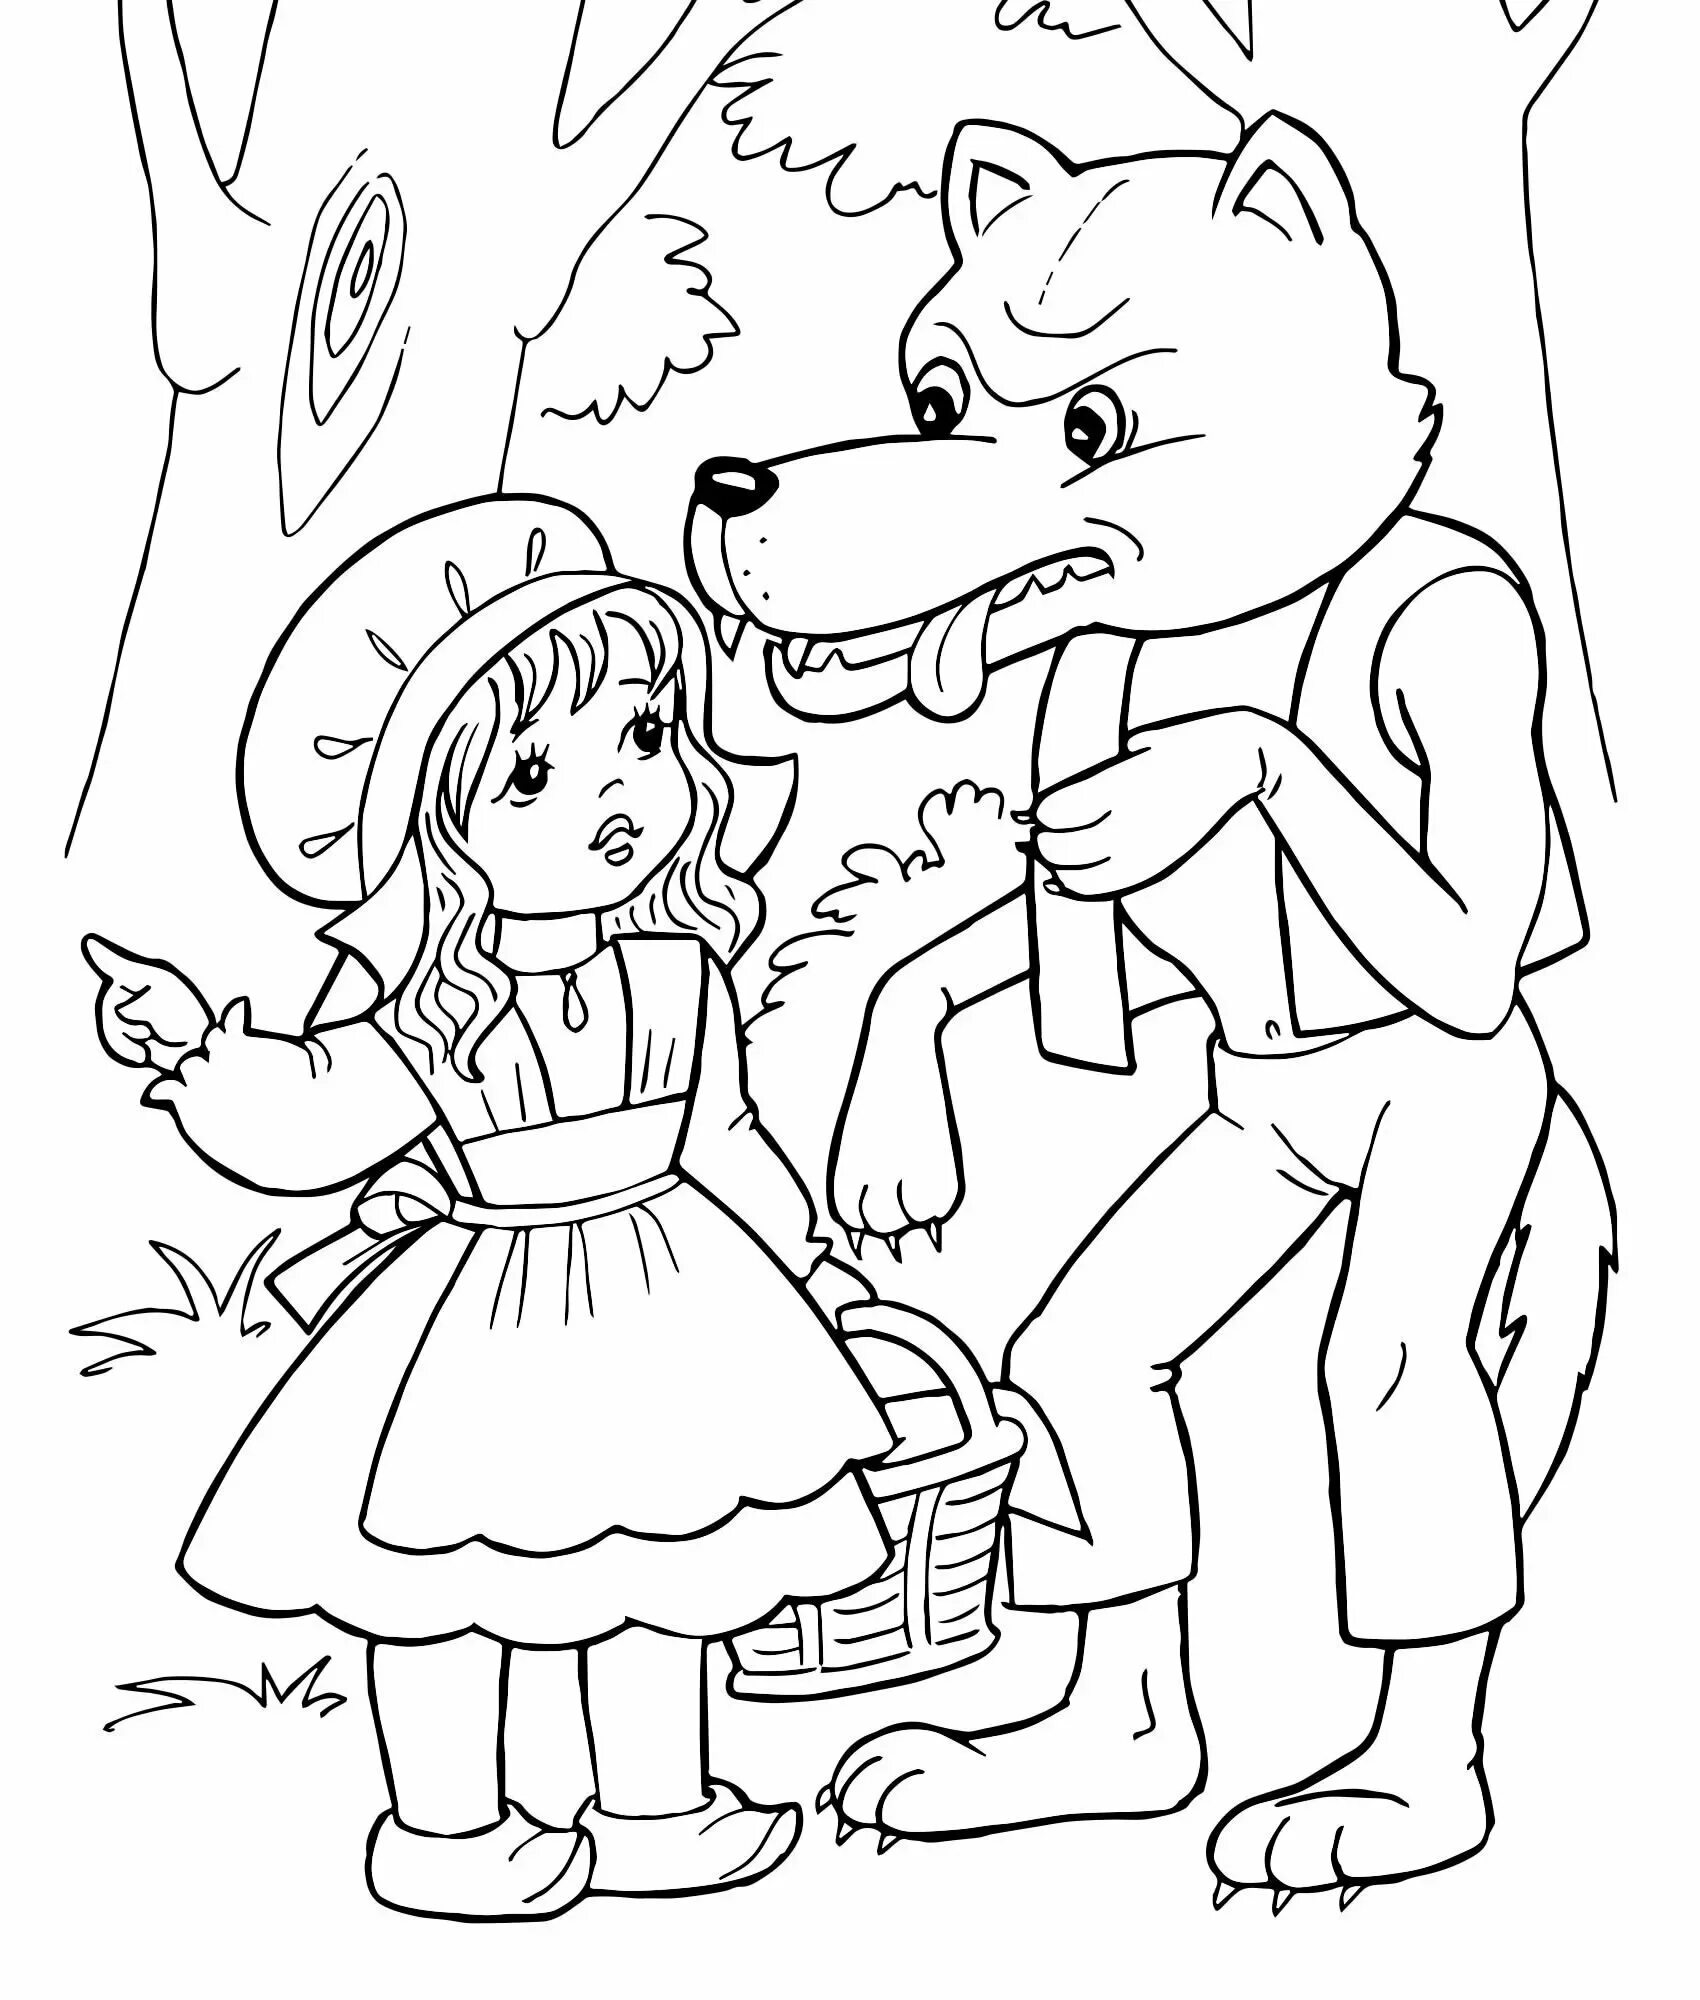 Волк из сказки красная шапочка разукрашка для детей. Раскраски по сказкам для детей 4 лет